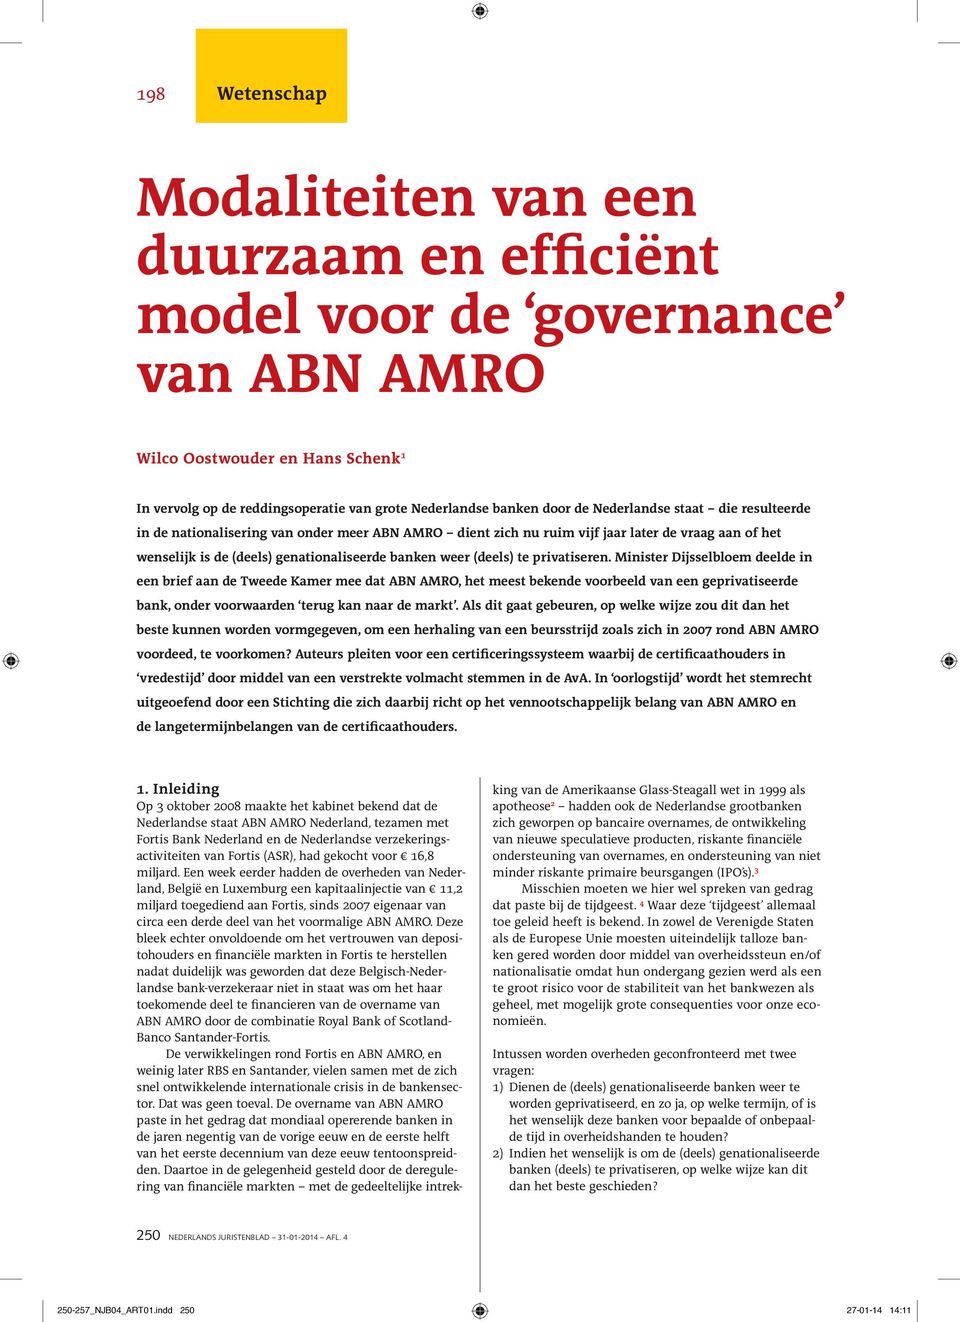 te privatiseren. Minister Dijsselbloem deelde in een brief aan de Tweede Kamer mee dat ABN AMRO, het meest bekende voorbeeld van een geprivatiseerde bank, onder voorwaarden terug kan naar de markt.